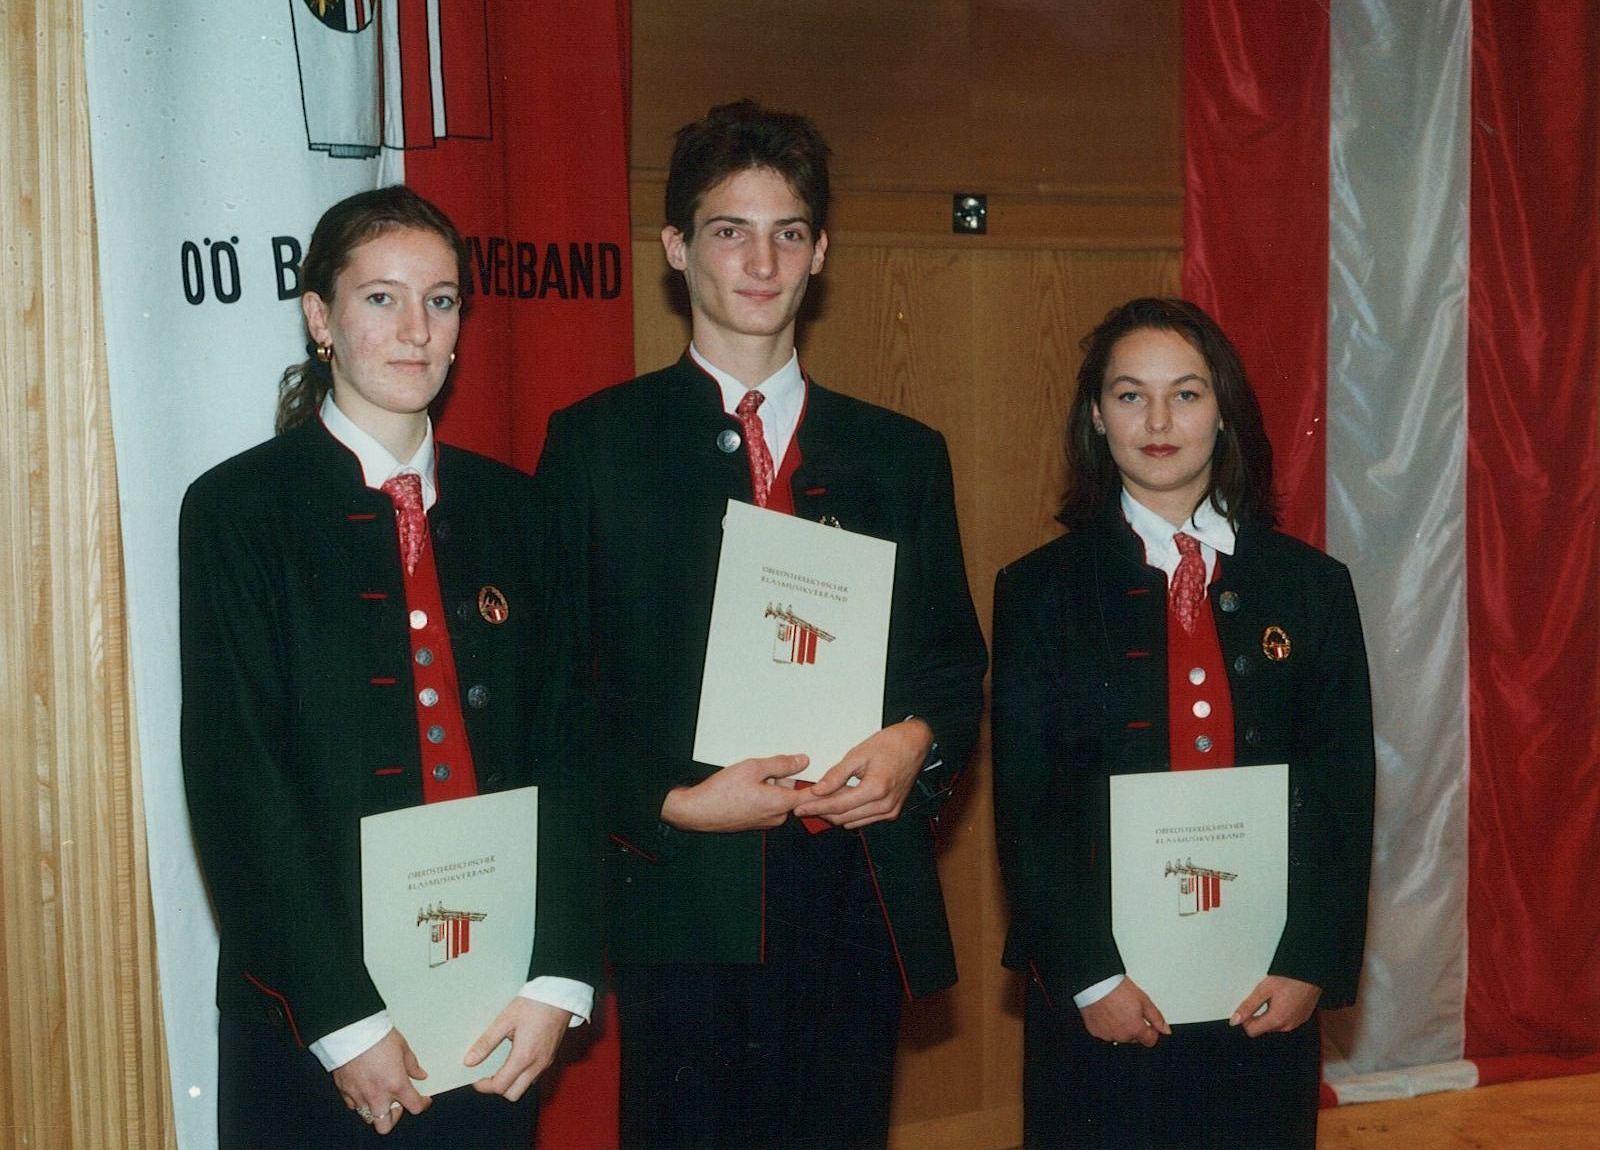 Verleihung der Jungmusikerleistungsabzeichen 1994